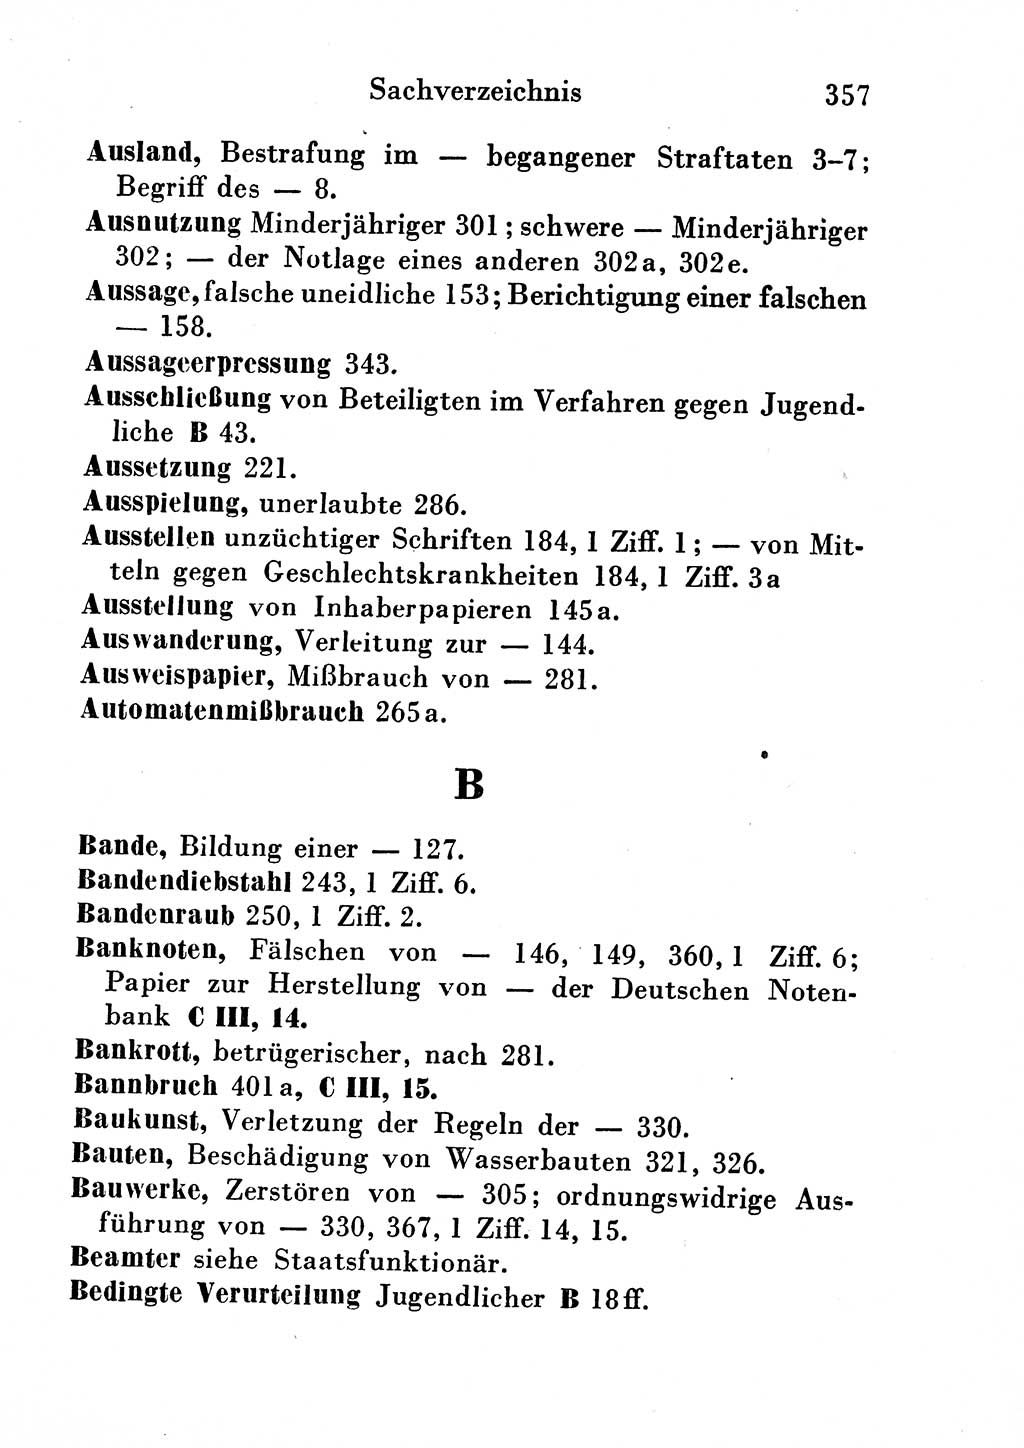 Strafgesetzbuch (StGB) und andere Strafgesetze [Deutsche Demokratische Republik (DDR)] 1954, Seite 357 (StGB Strafges. DDR 1954, S. 357)